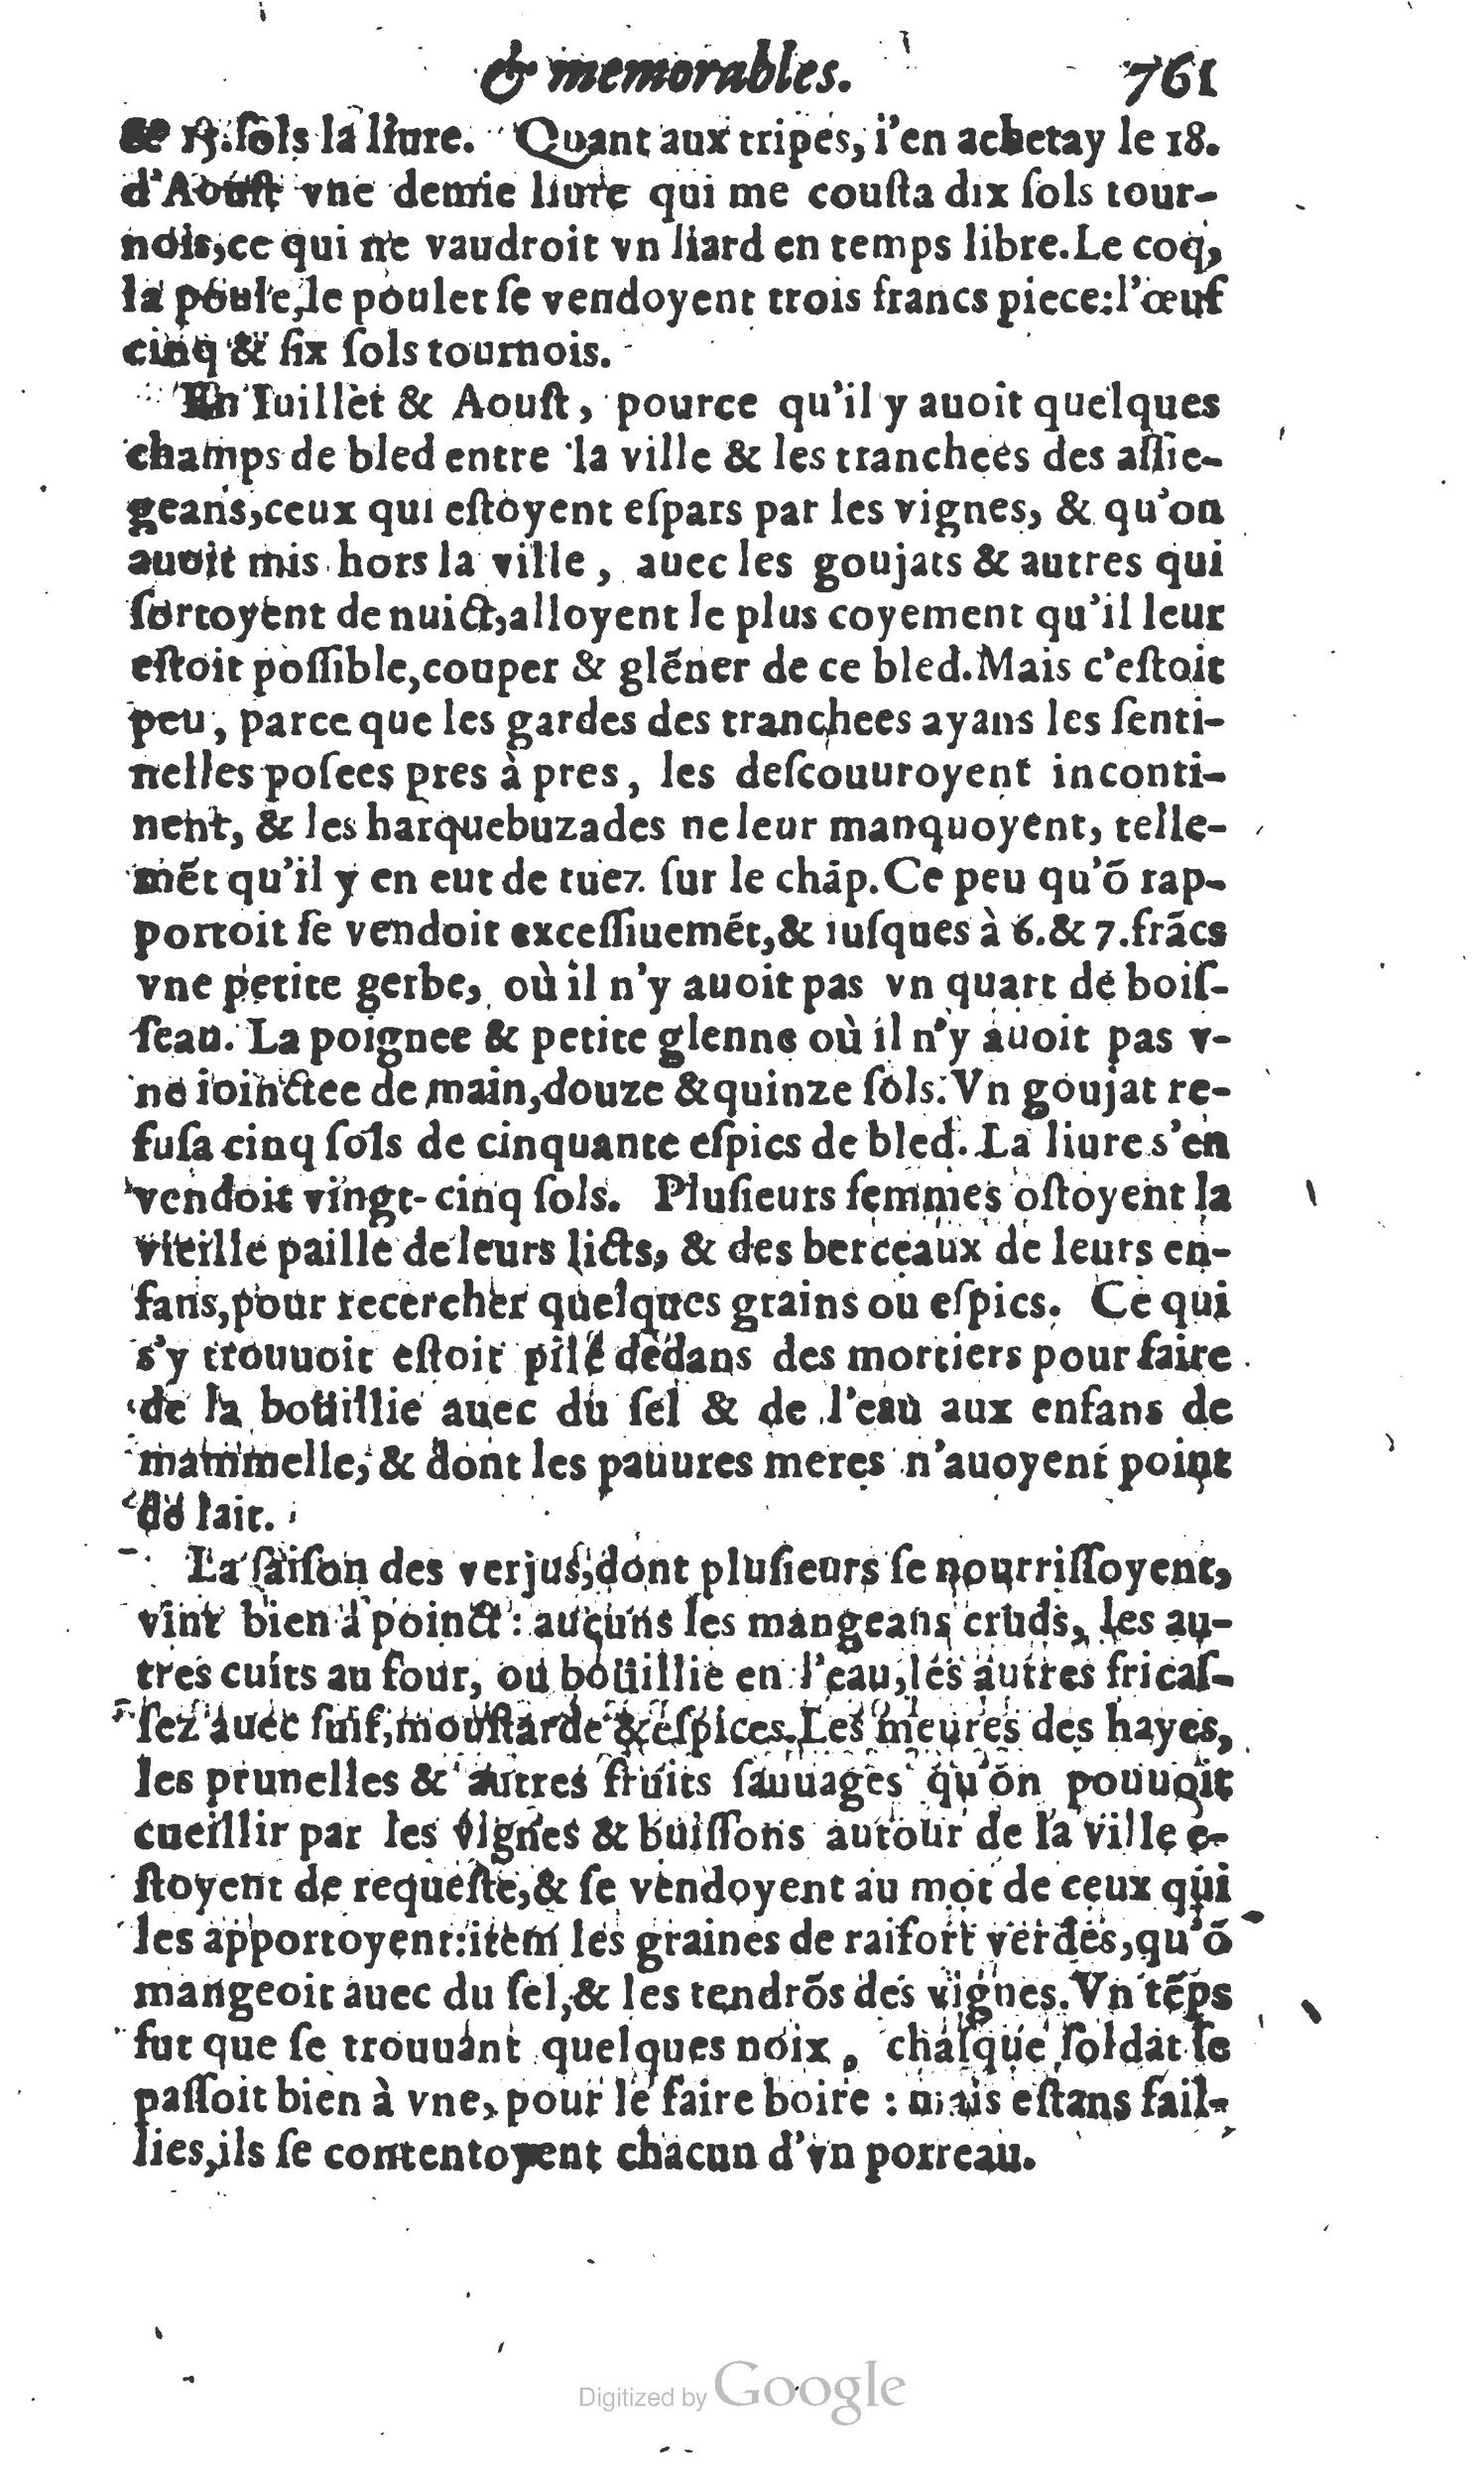 1610 Trésor d’histoires admirables et mémorables de nostre temps Marceau Princeton_Page_0782.jpg